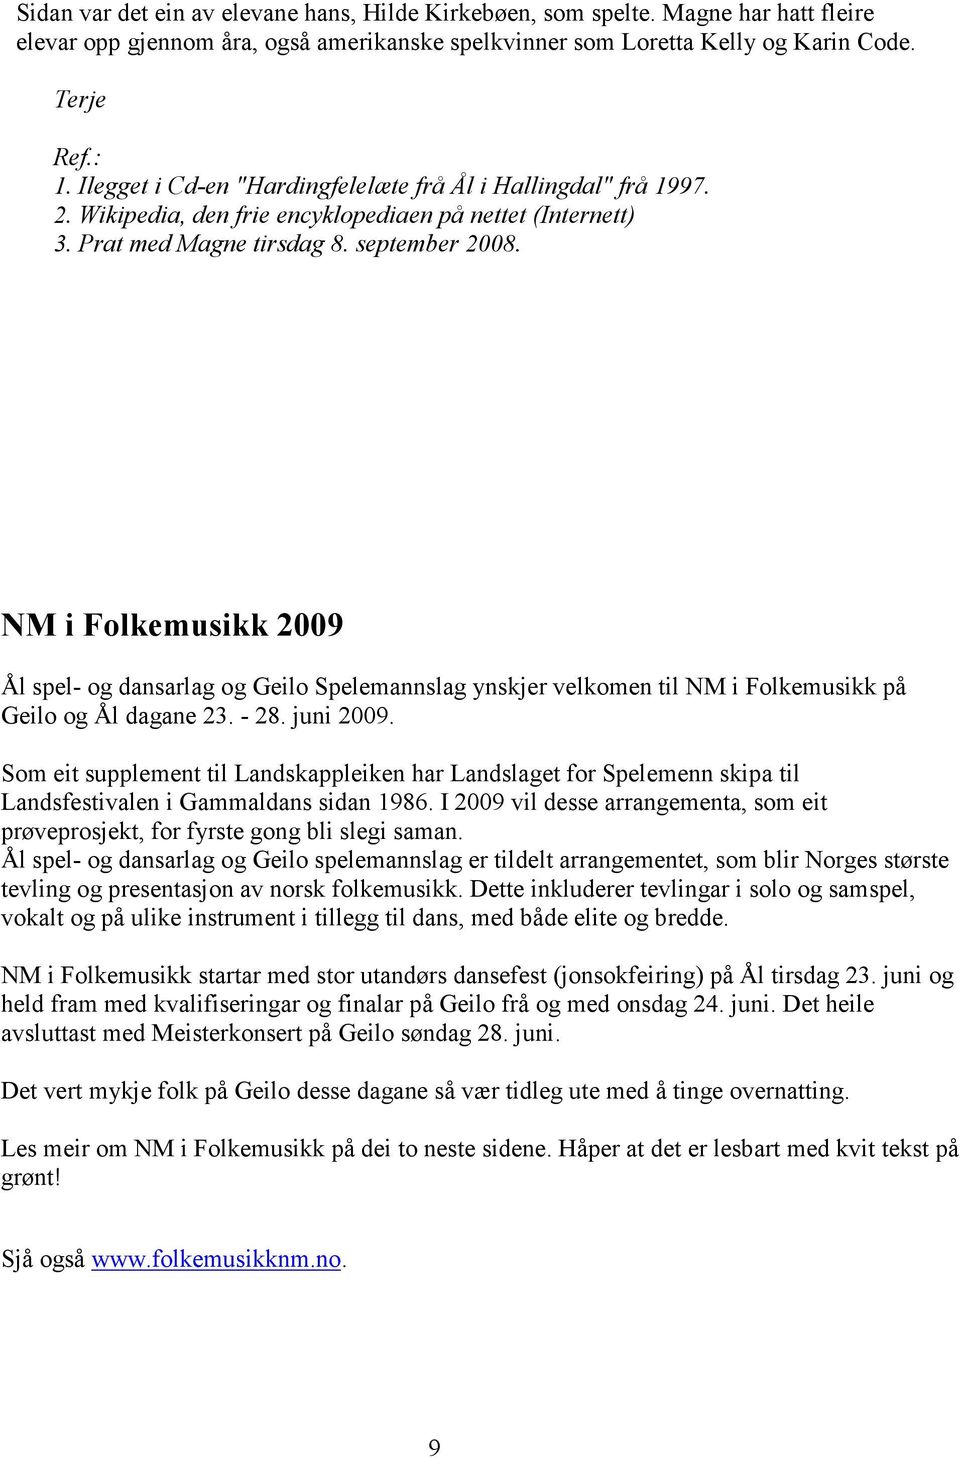 NM i Folkemusikk 2009 Ål spel- og dansarlag og Geilo Spelemannslag ynskjer velkomen til NM i Folkemusikk på Geilo og Ål dagane 23. - 28. juni 2009.